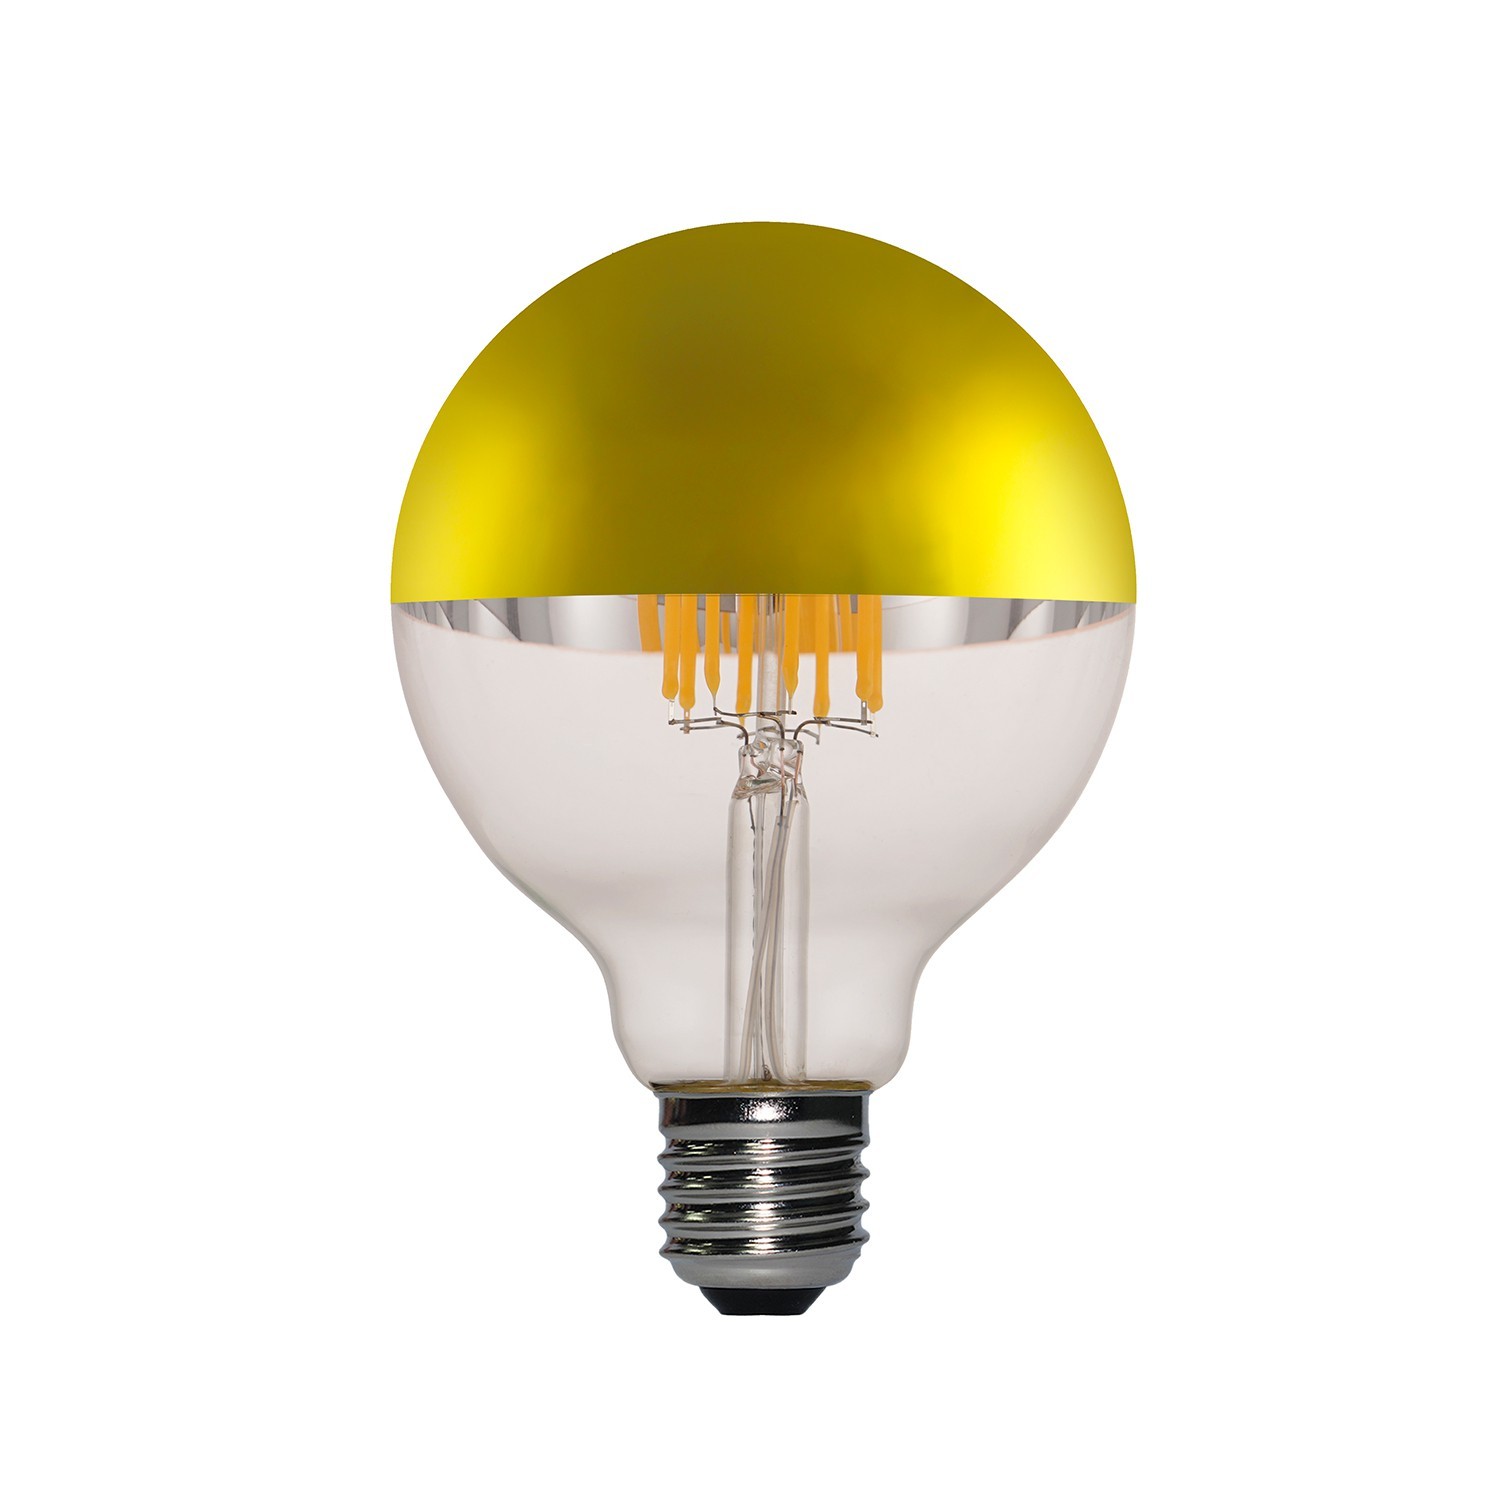 Zlatna "half sphere" Globe G95 LED žarulja 7W E27 2700K dimabilna ( s prigušivanjem svjetla )